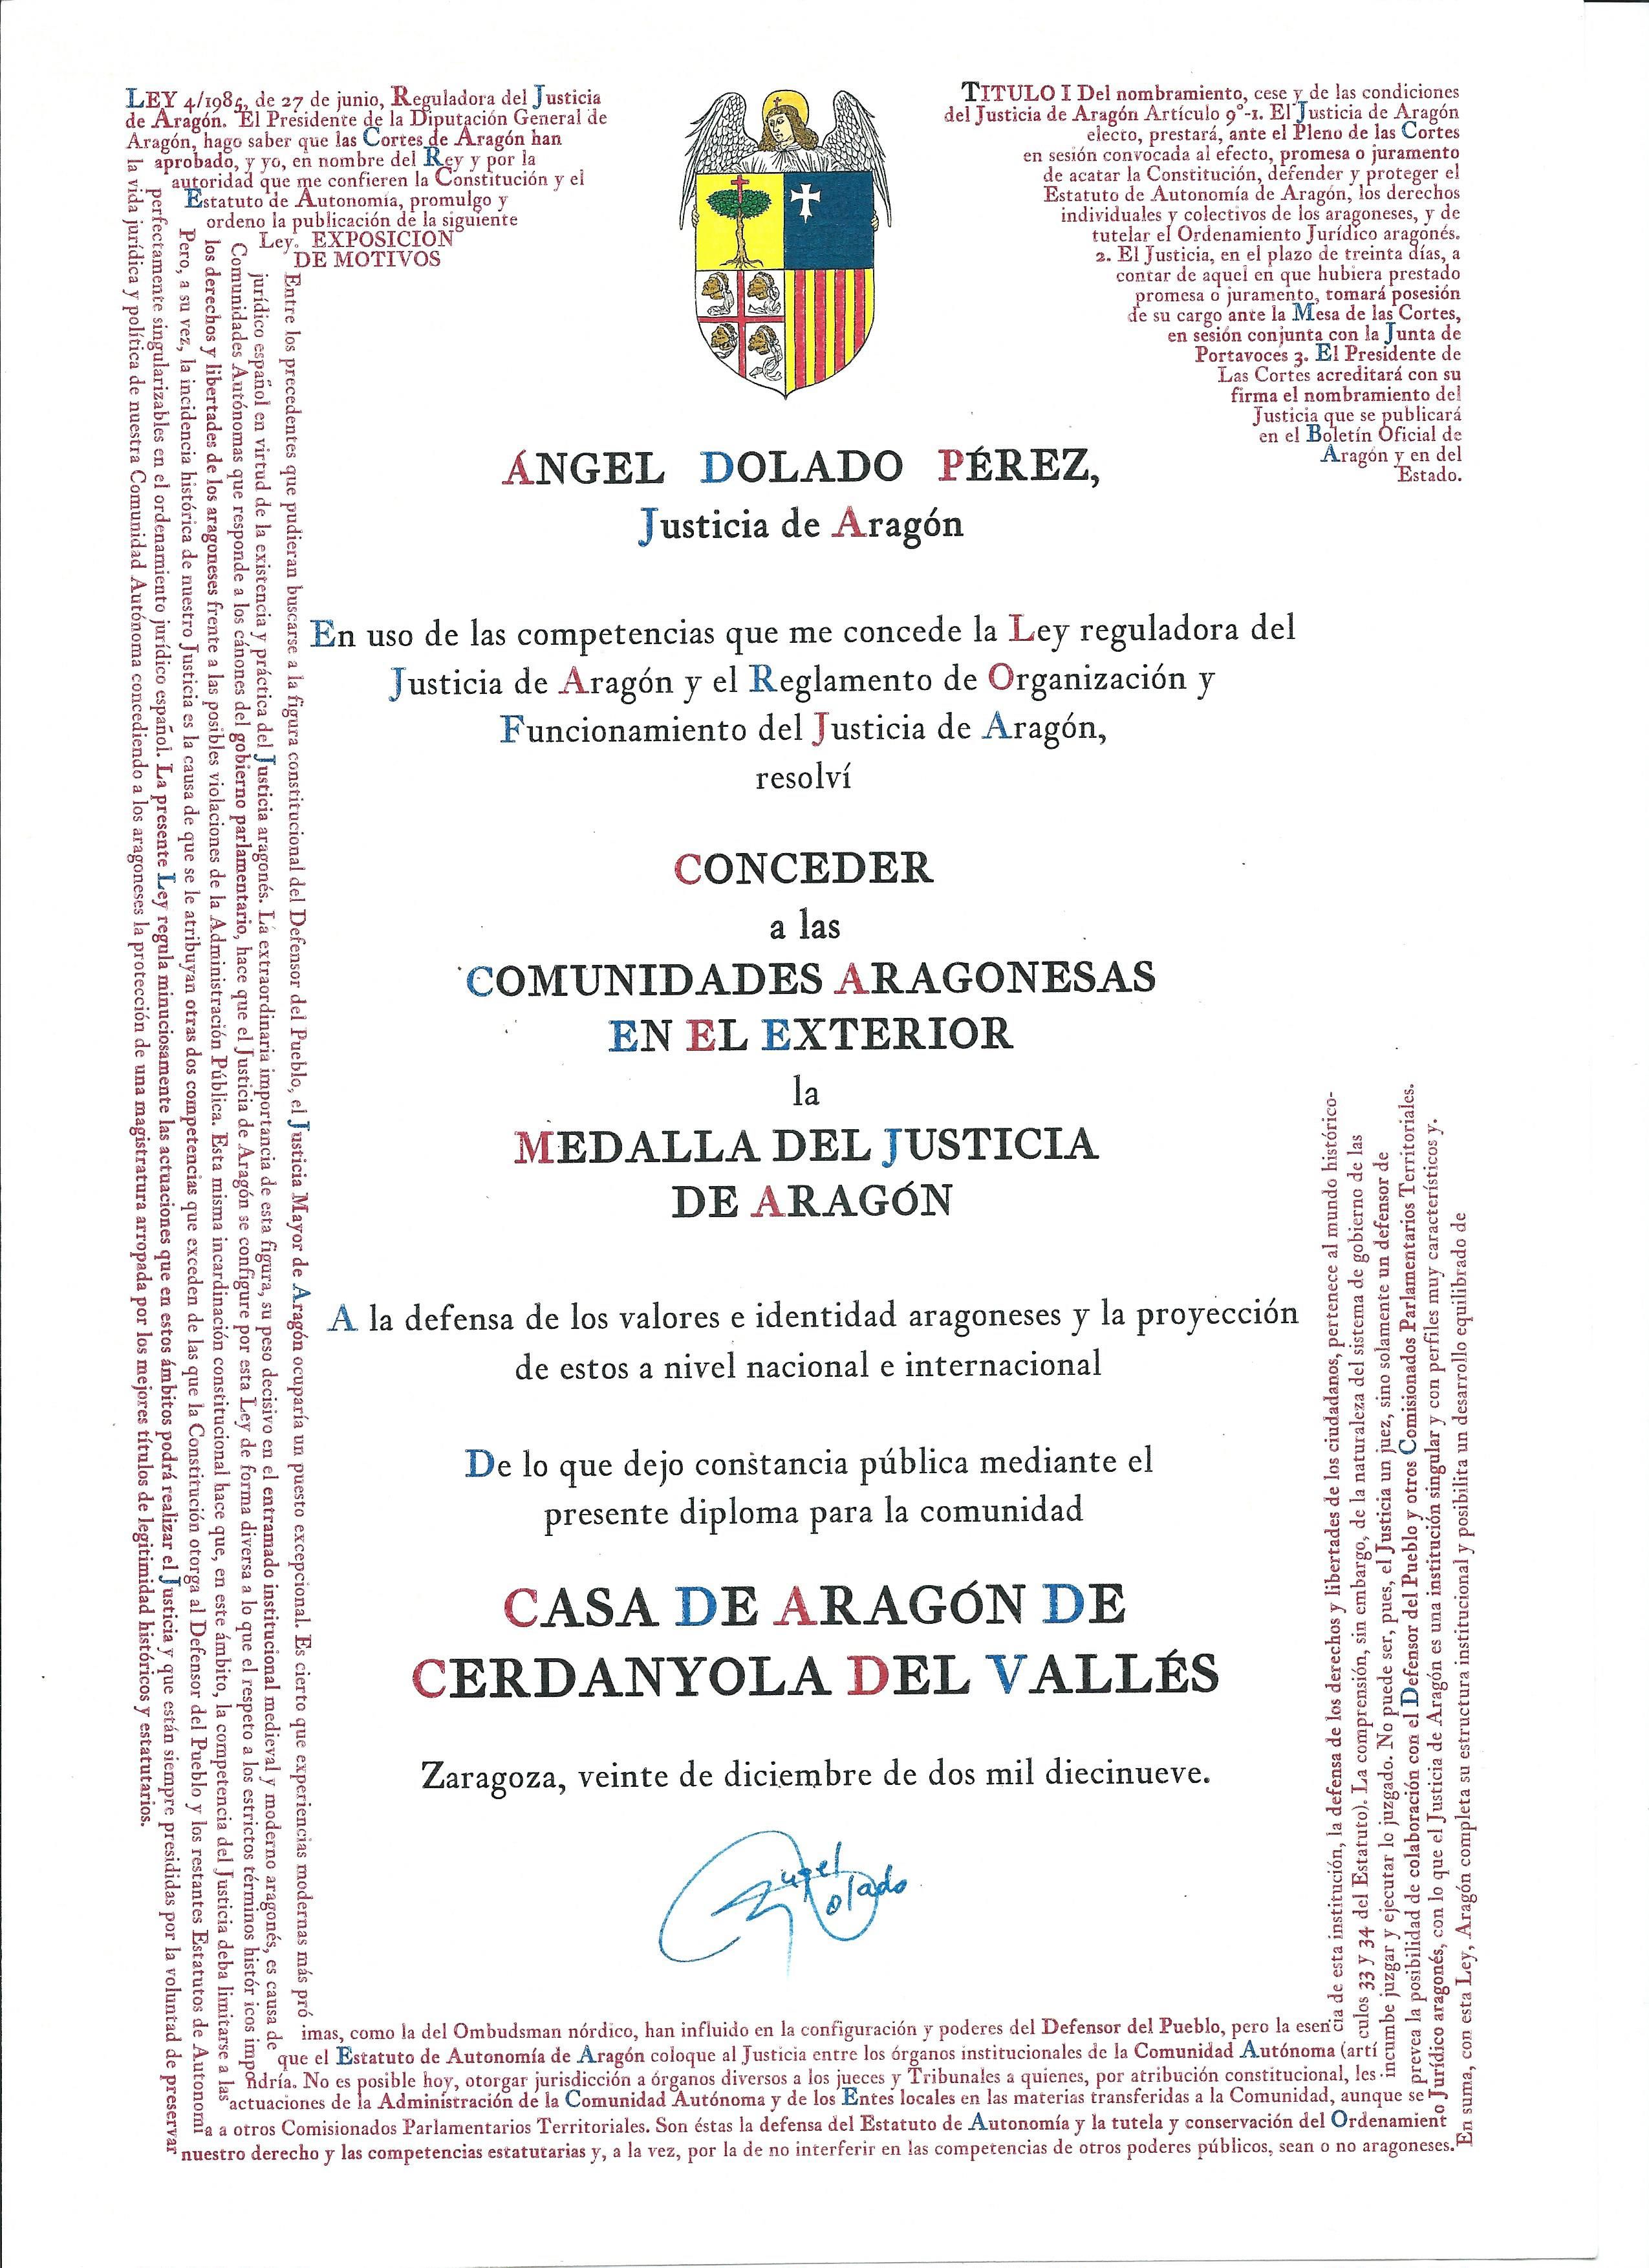 Diploma de la Casa de Aragón de Cerdanyola